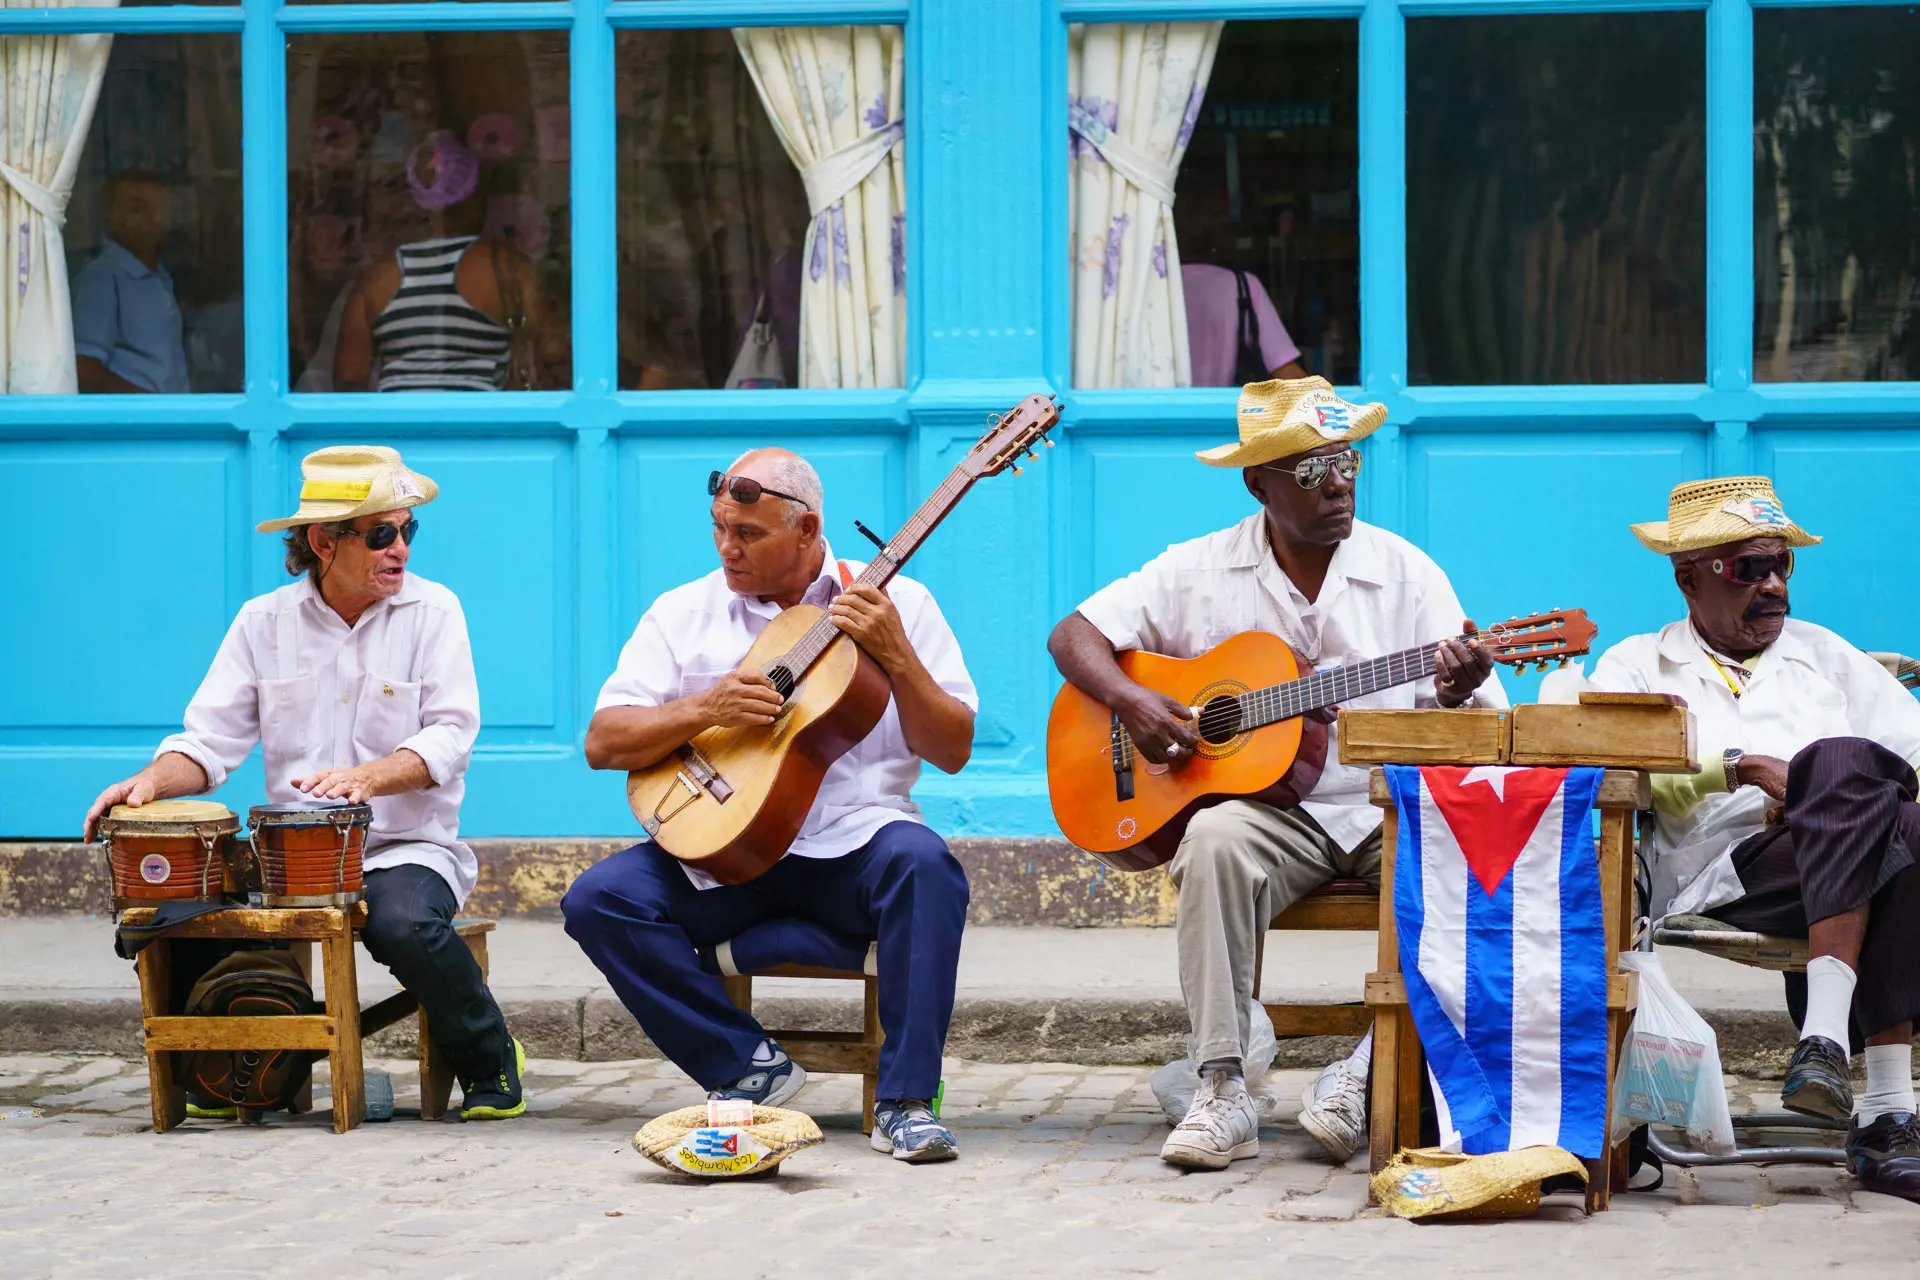 KULTUR - overalt på Cuba bliver man mødt af gademusikanter, der spiller og synger de klassiske melodier og sange, Check Point Travel